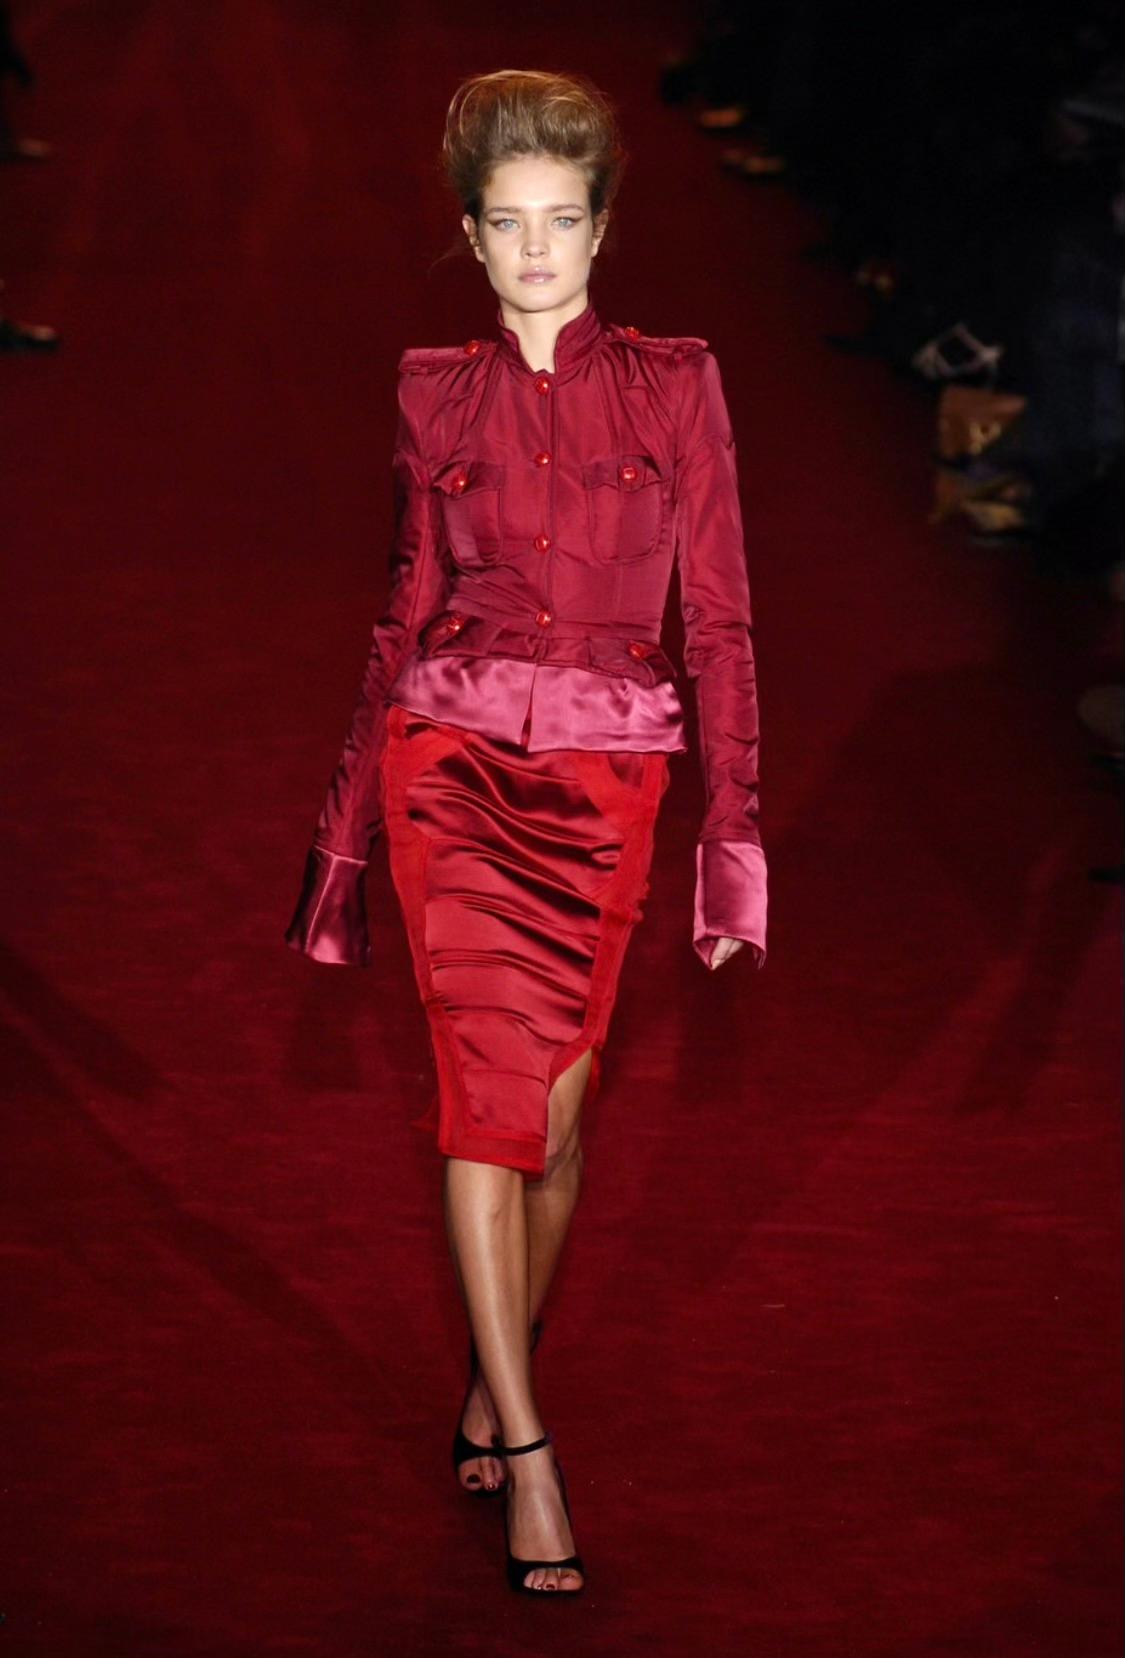 Presentamos una llamativa chaqueta blazer de seda roja diseñada por Tom Ford para la colección Otoño/Invierno 2004 de Yves Saint Laurent Rive Gauche. Esta colección, conocida como 